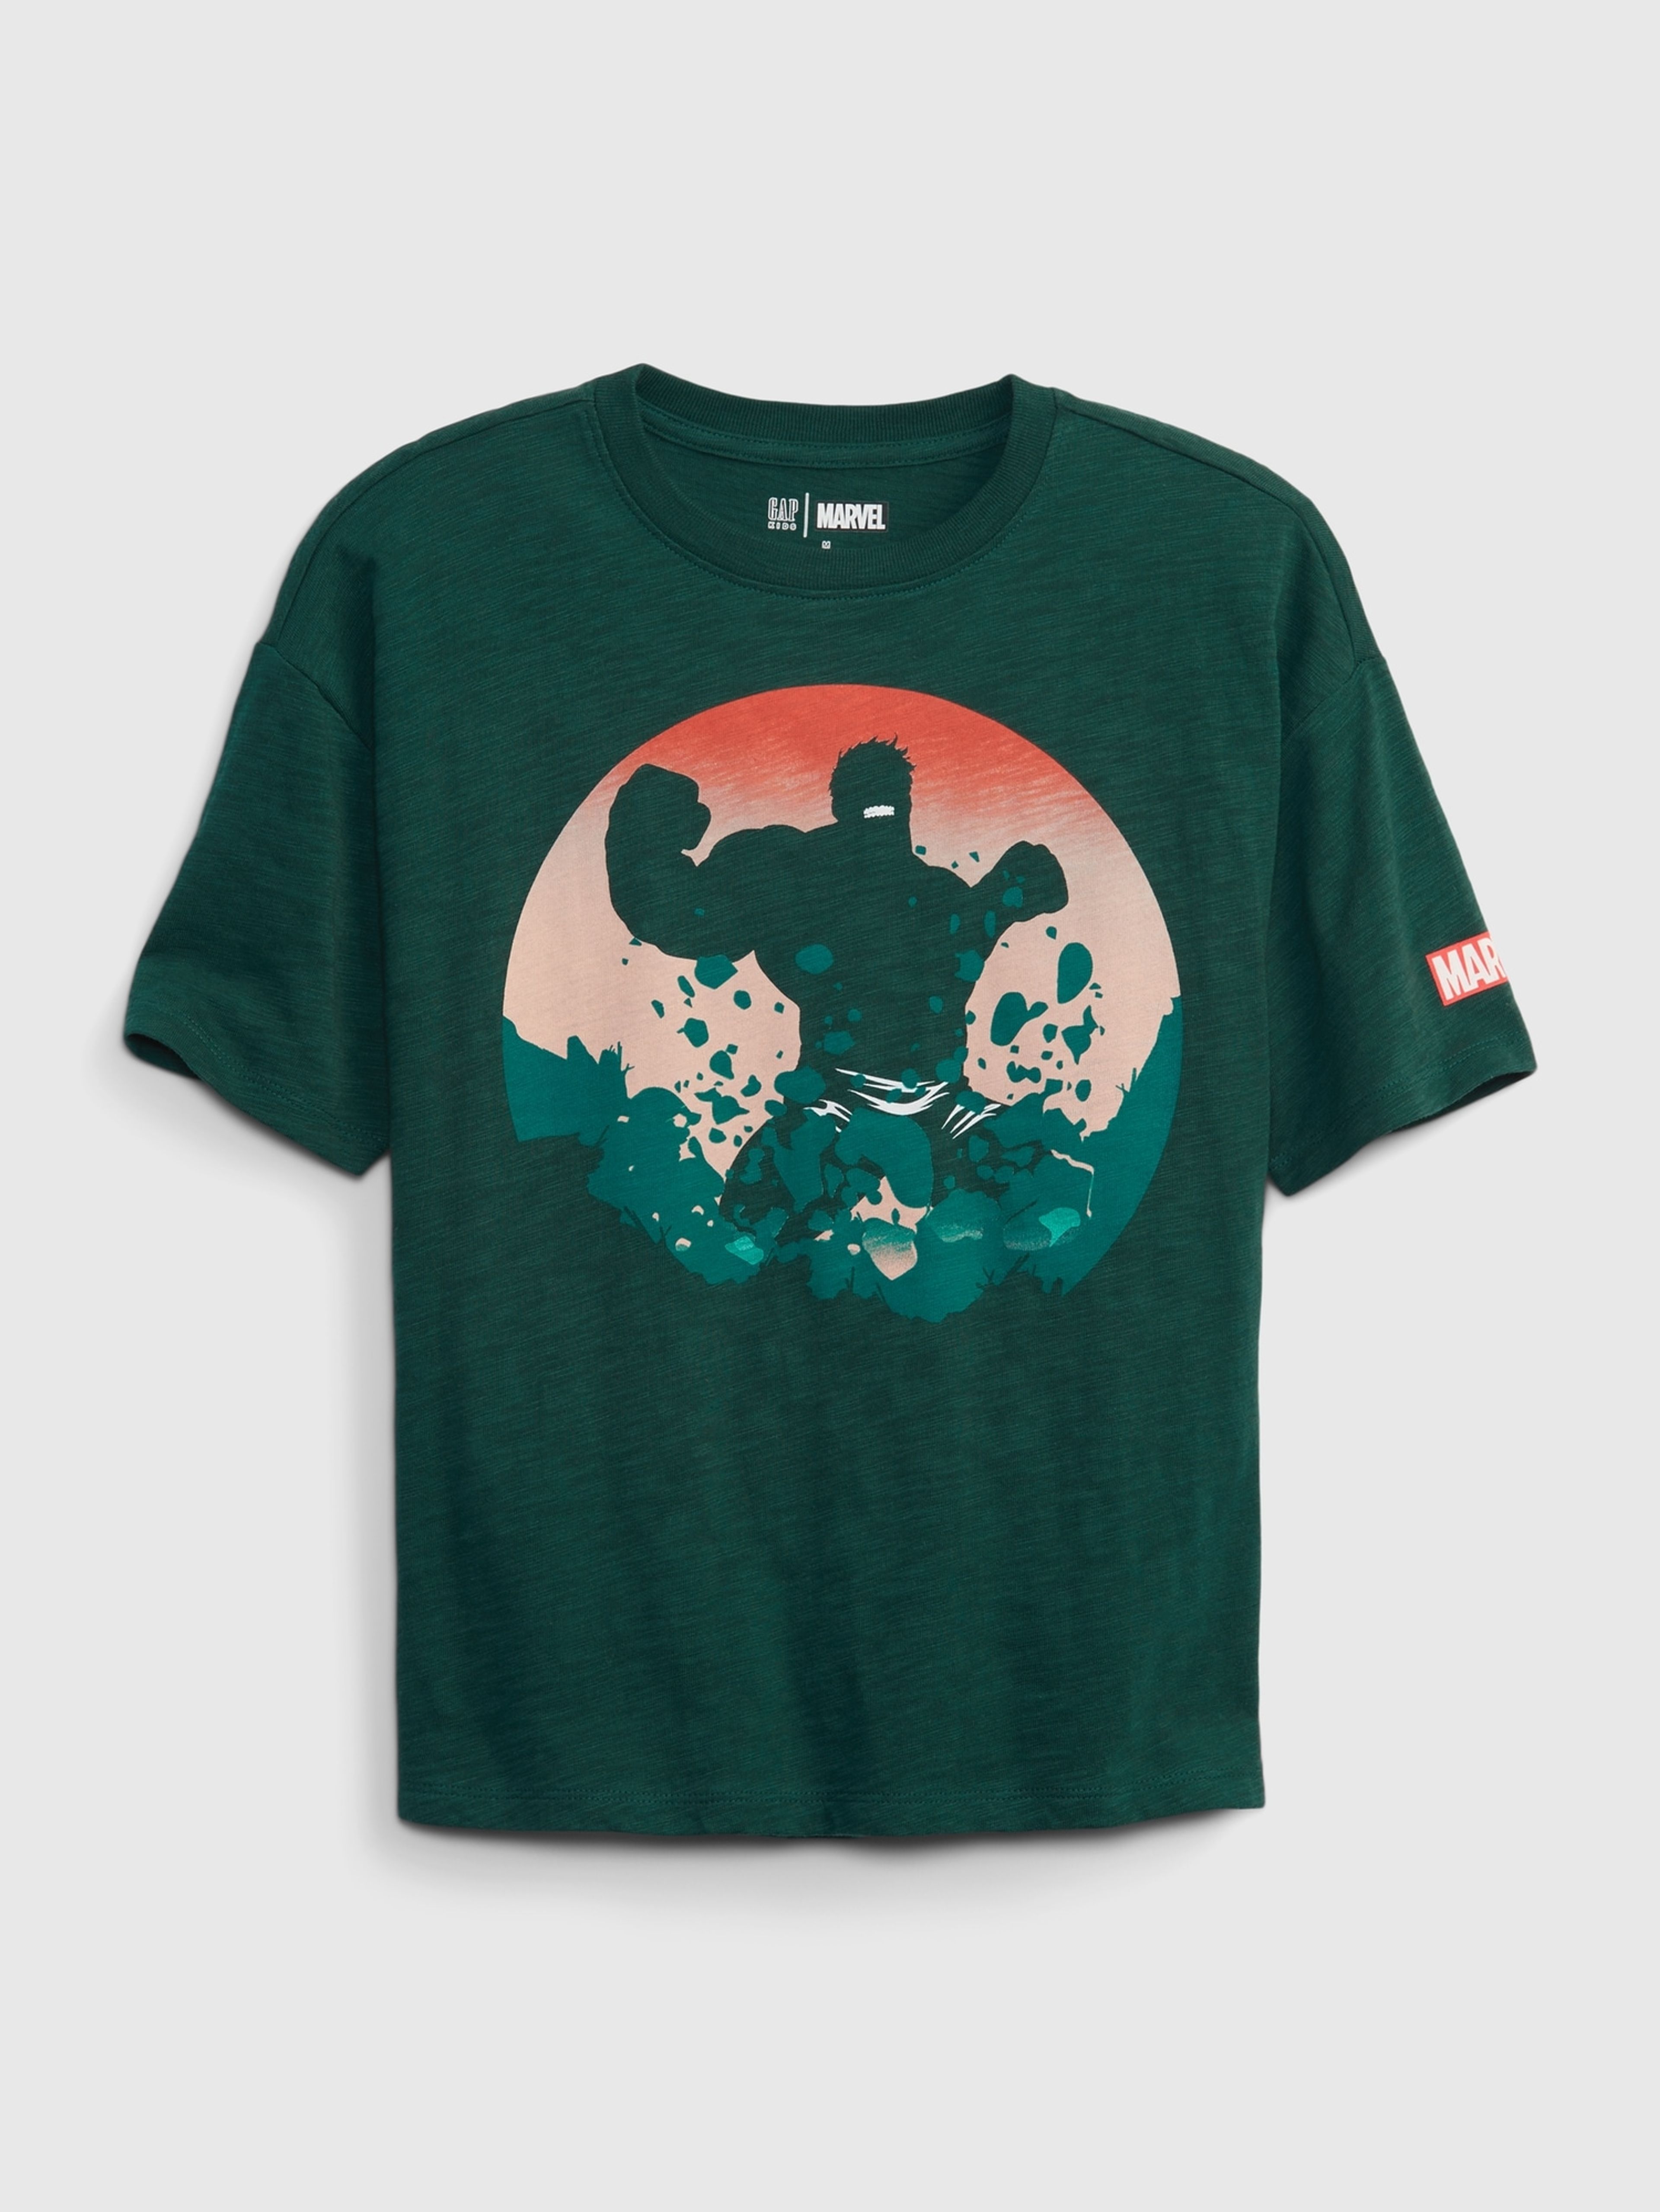 Kinder T-Shirt GAP & Marvel Superhelden